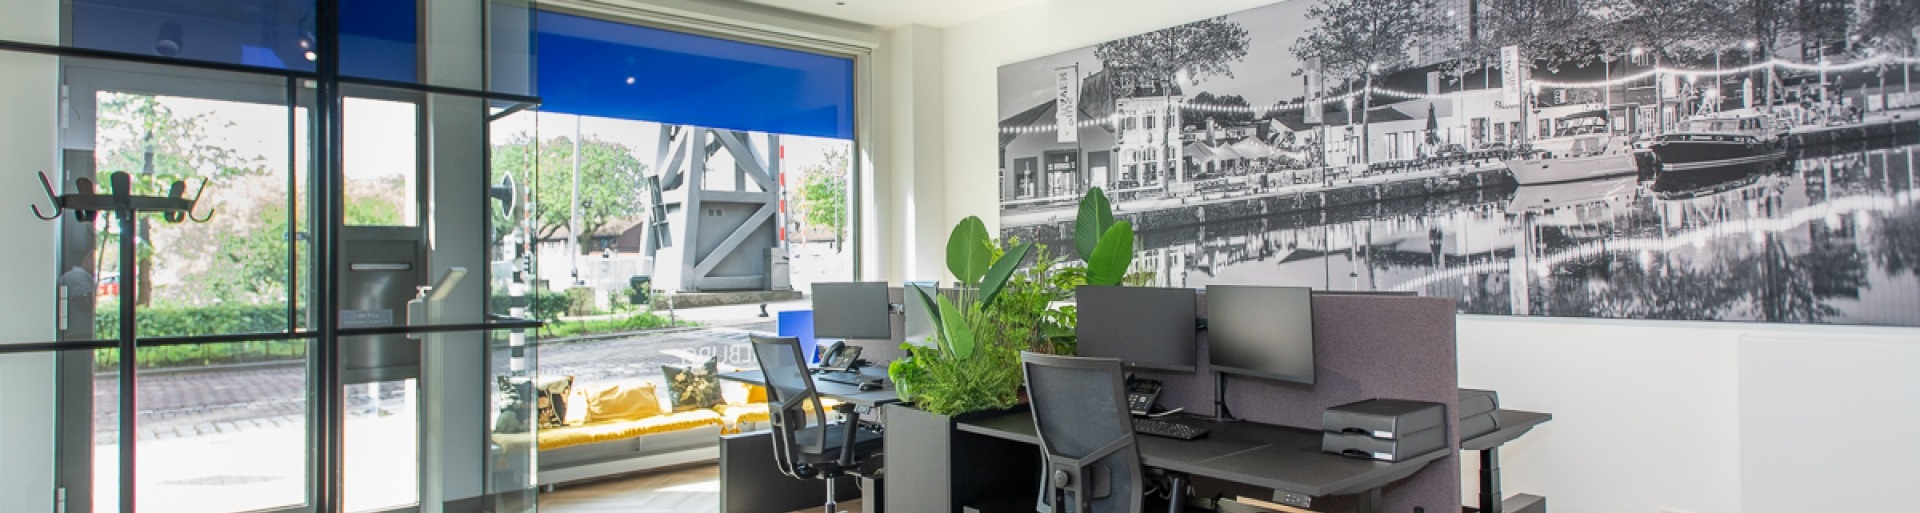 De bureaus op kantoor bij T&W Tilburg